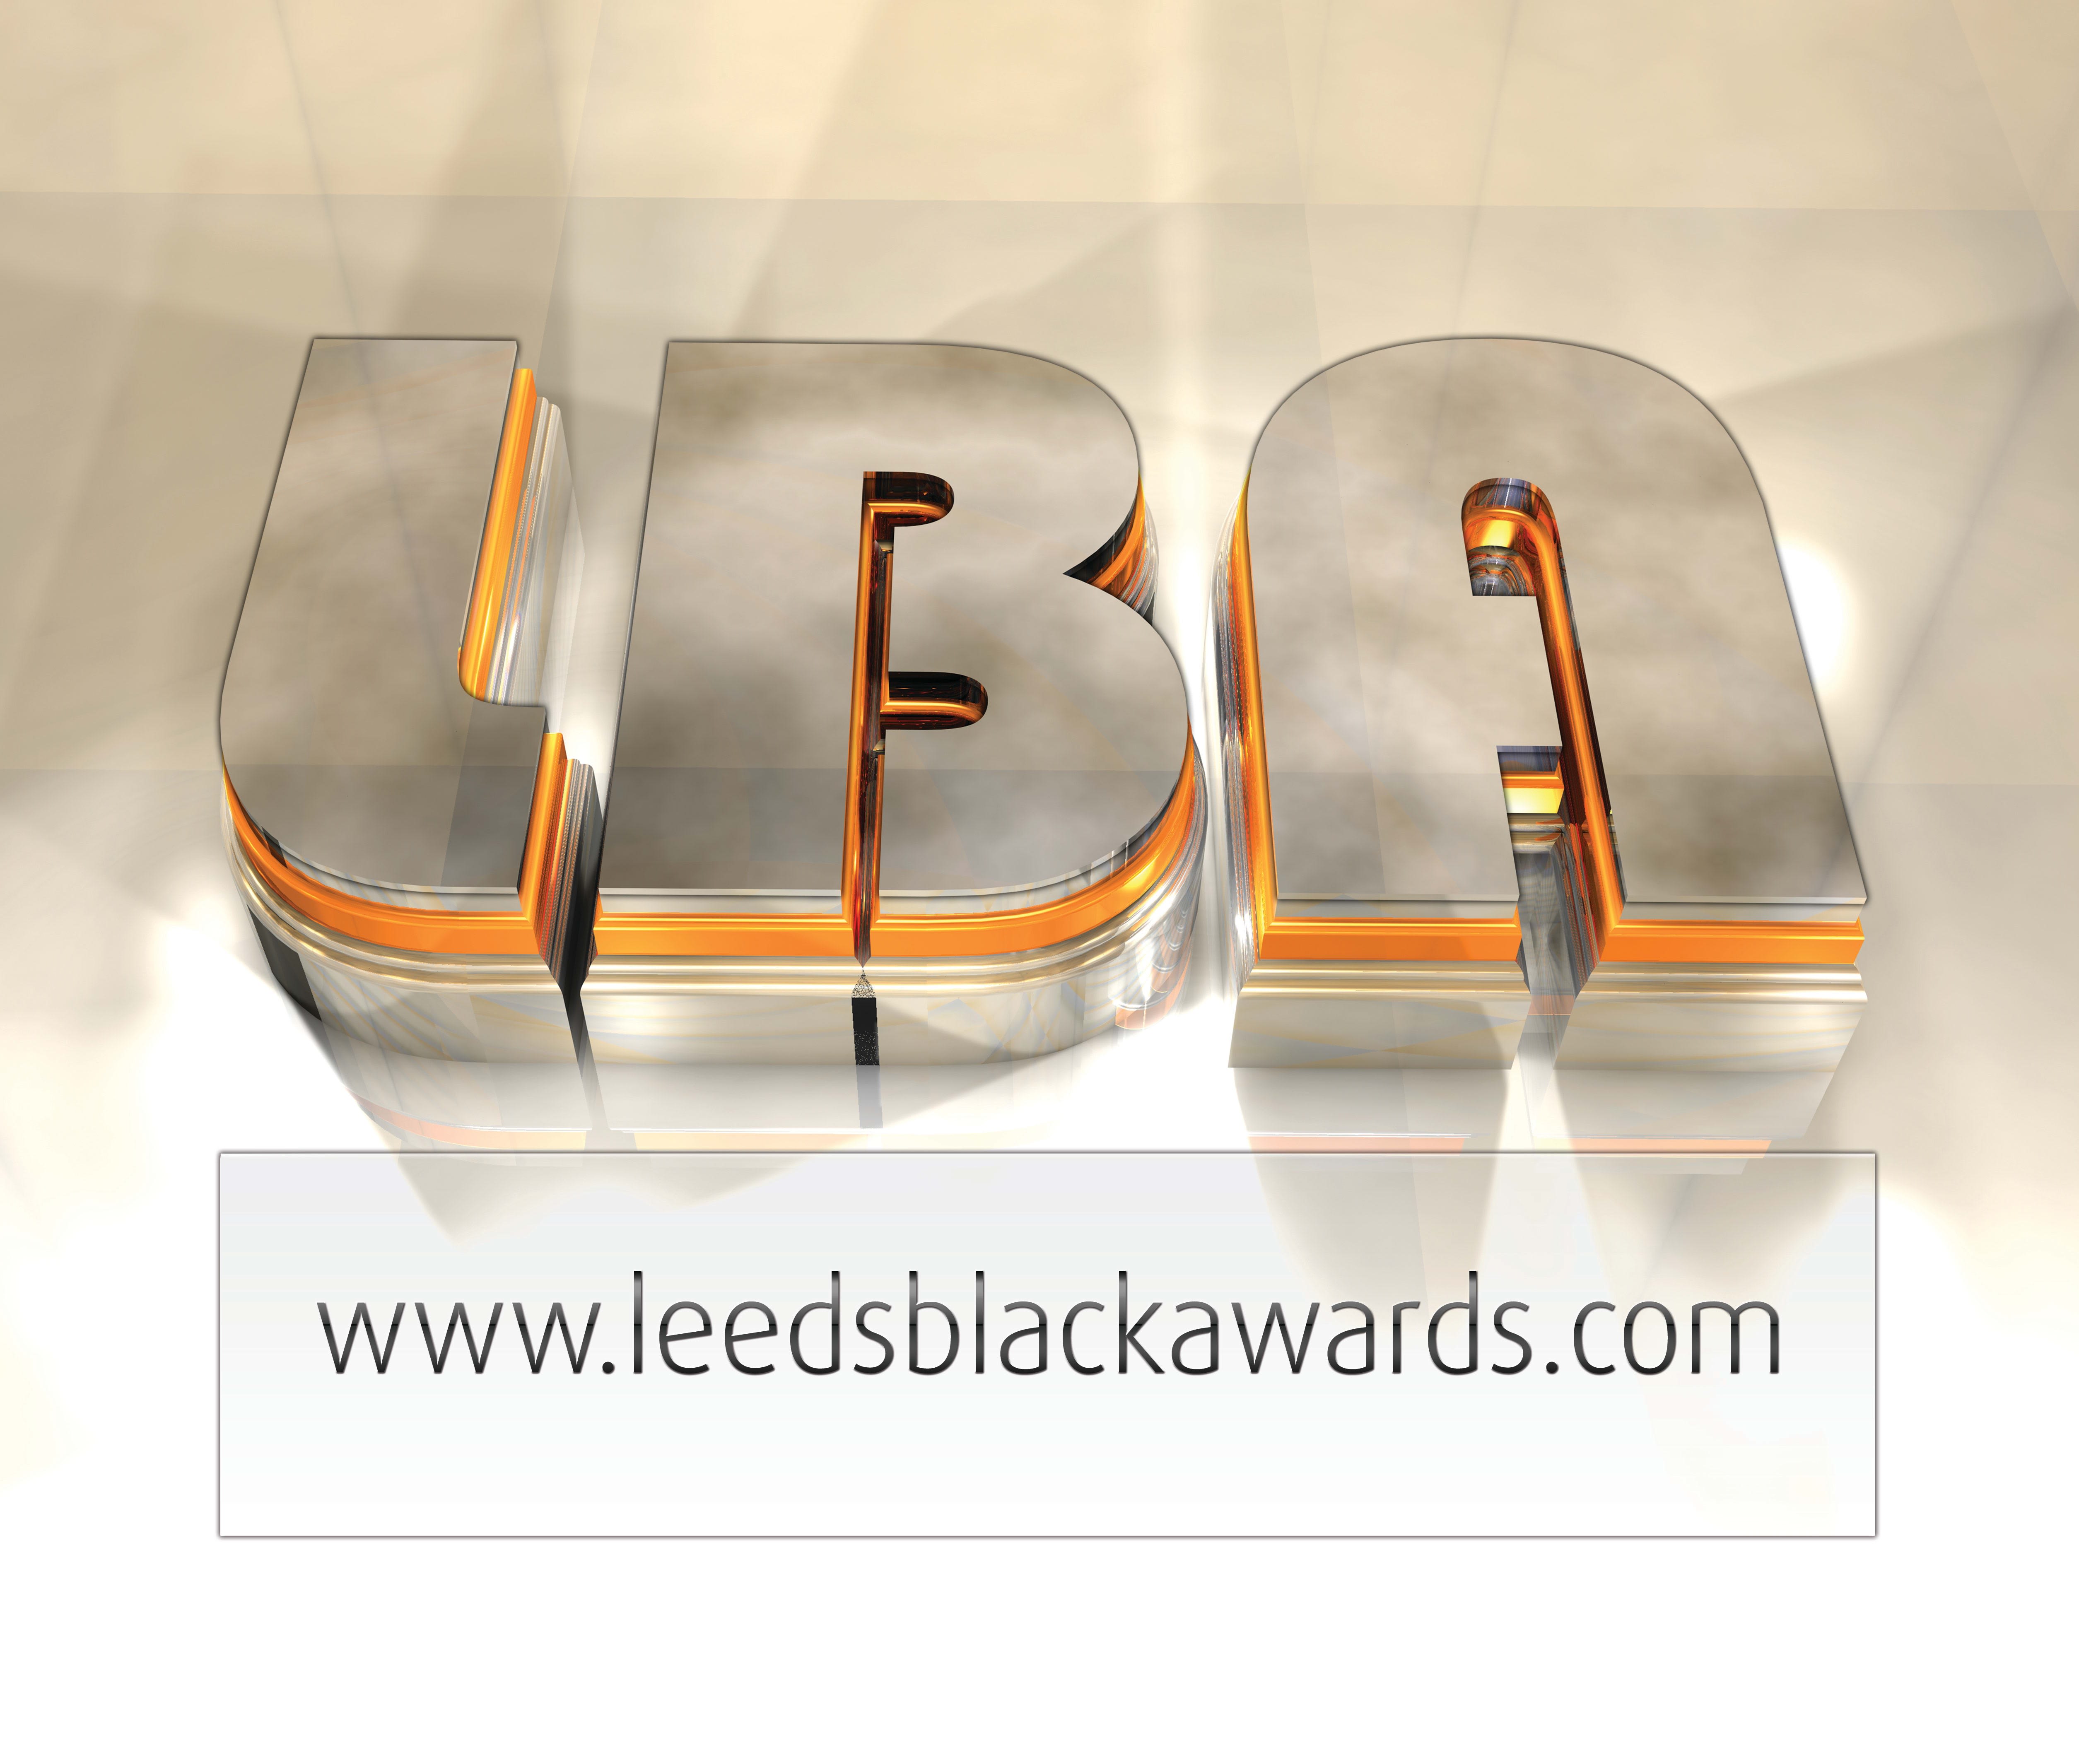 Leeds Black Awards